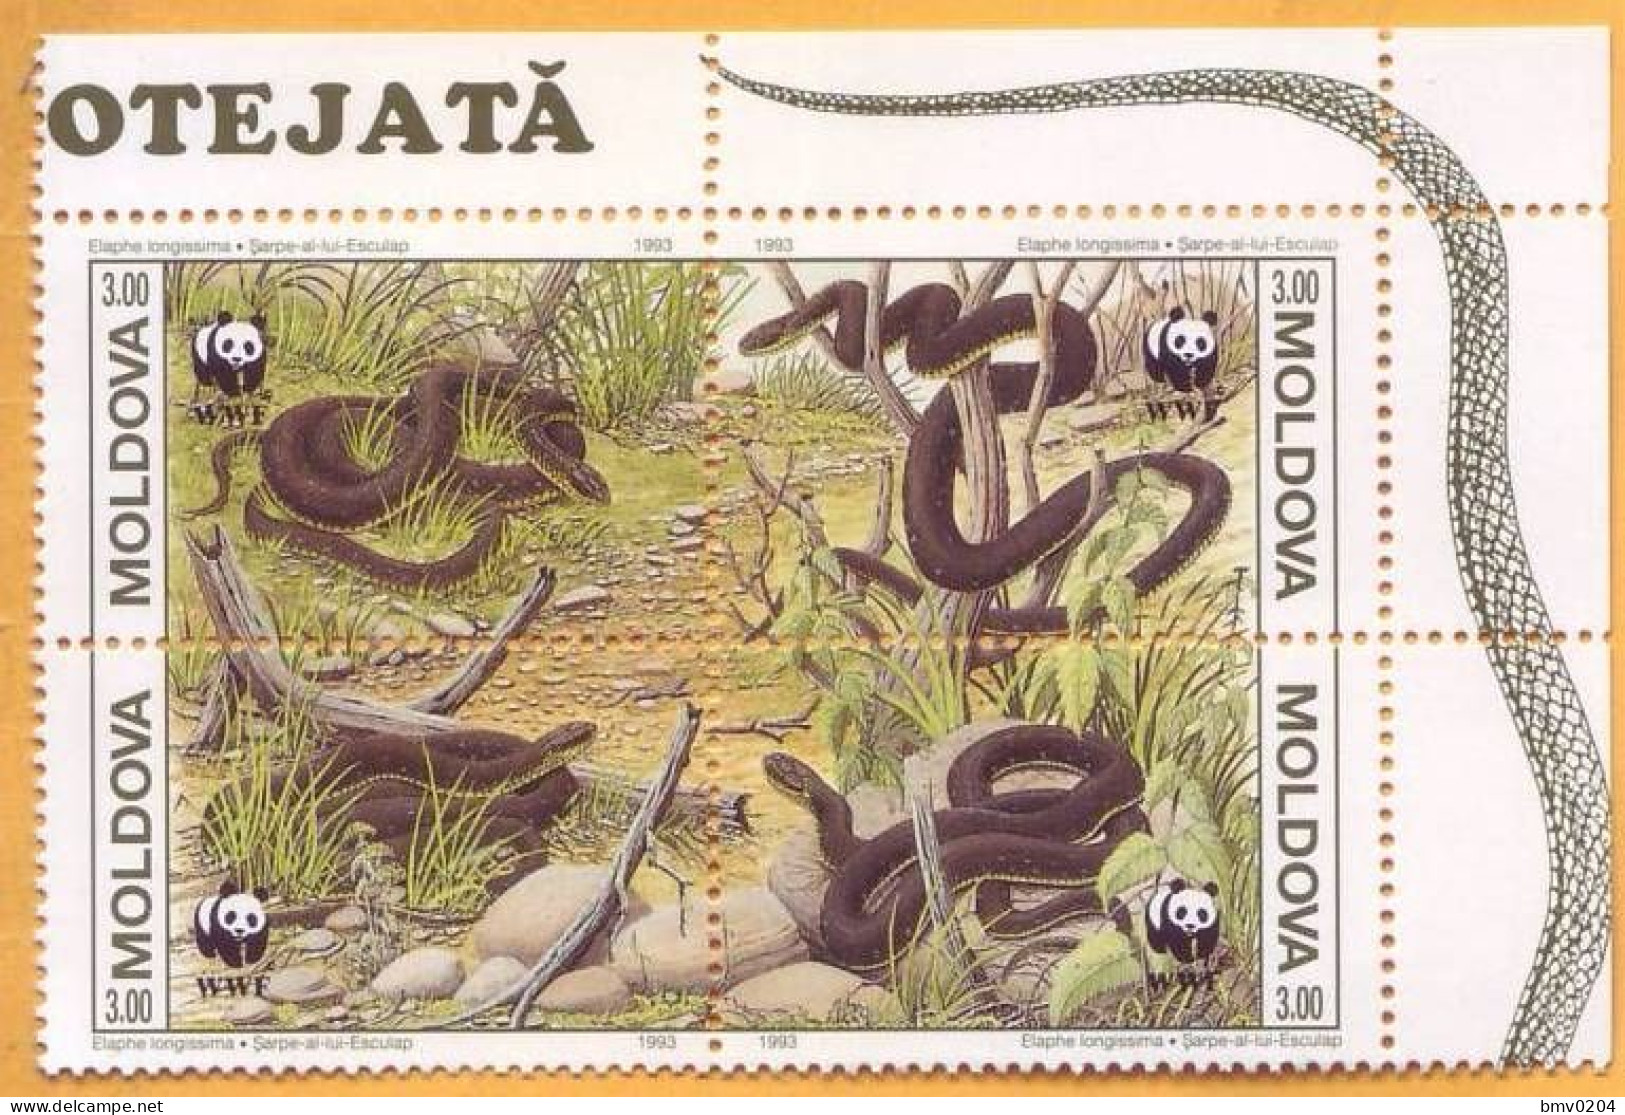 1993 Moldova Moldavie, Fauna, Snakes, Nature, WWF, 4v Mint - Serpenti